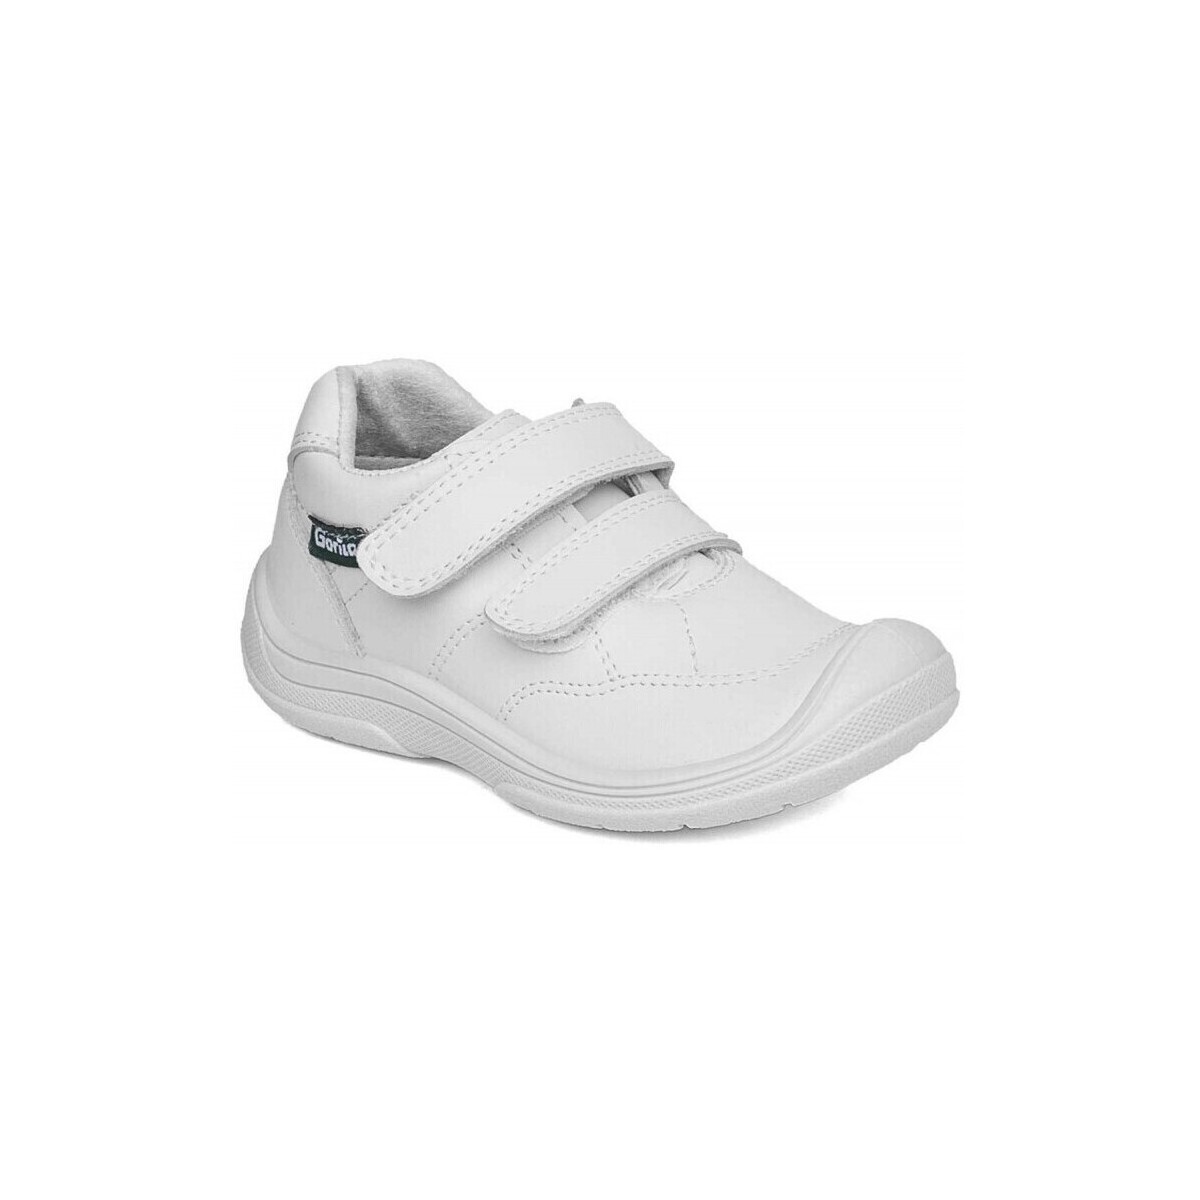 kengät Mokkasiinit Gorila 23941-18 Valkoinen